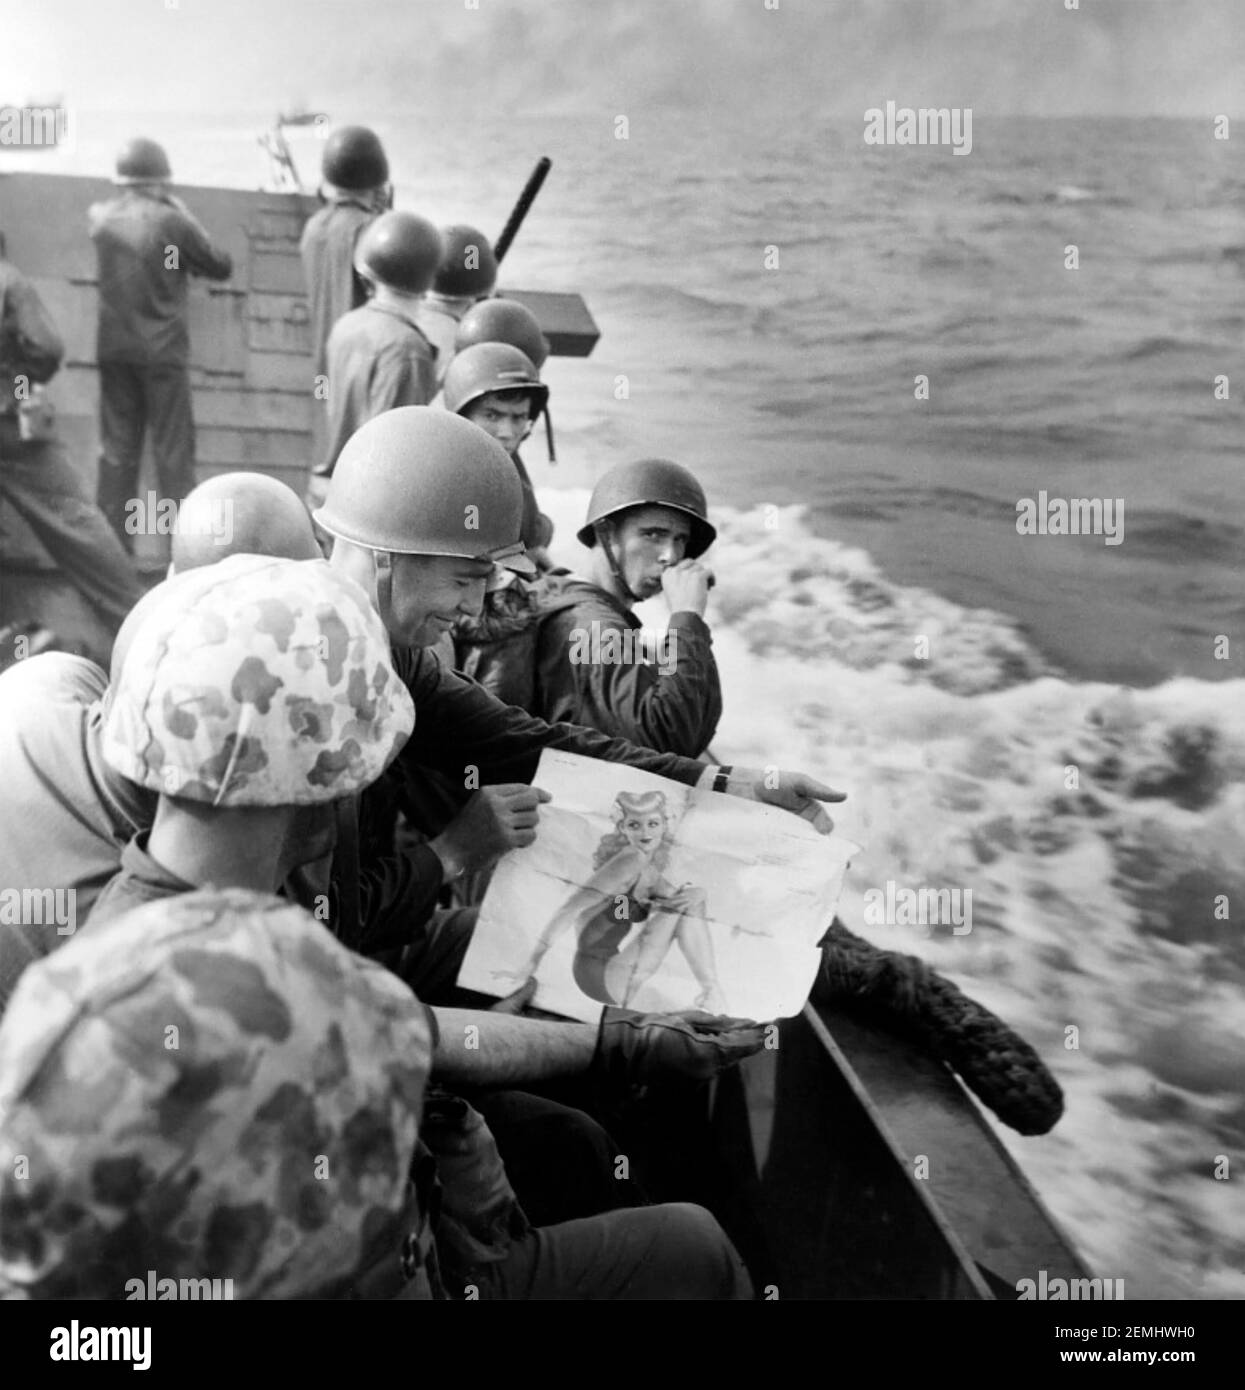 SCHLACHT VON TAWARA NOVEMBER 1943.. Amerikanische Marineinfanteristen, die sich der von Japan gehaltenen Insel Tarawa auf den Gilbert-Inseln nähern, schätzen ein Pin-up-Bild. Intensive Kämpfe töteten etwa 6000 Kämpfer. Stockfoto